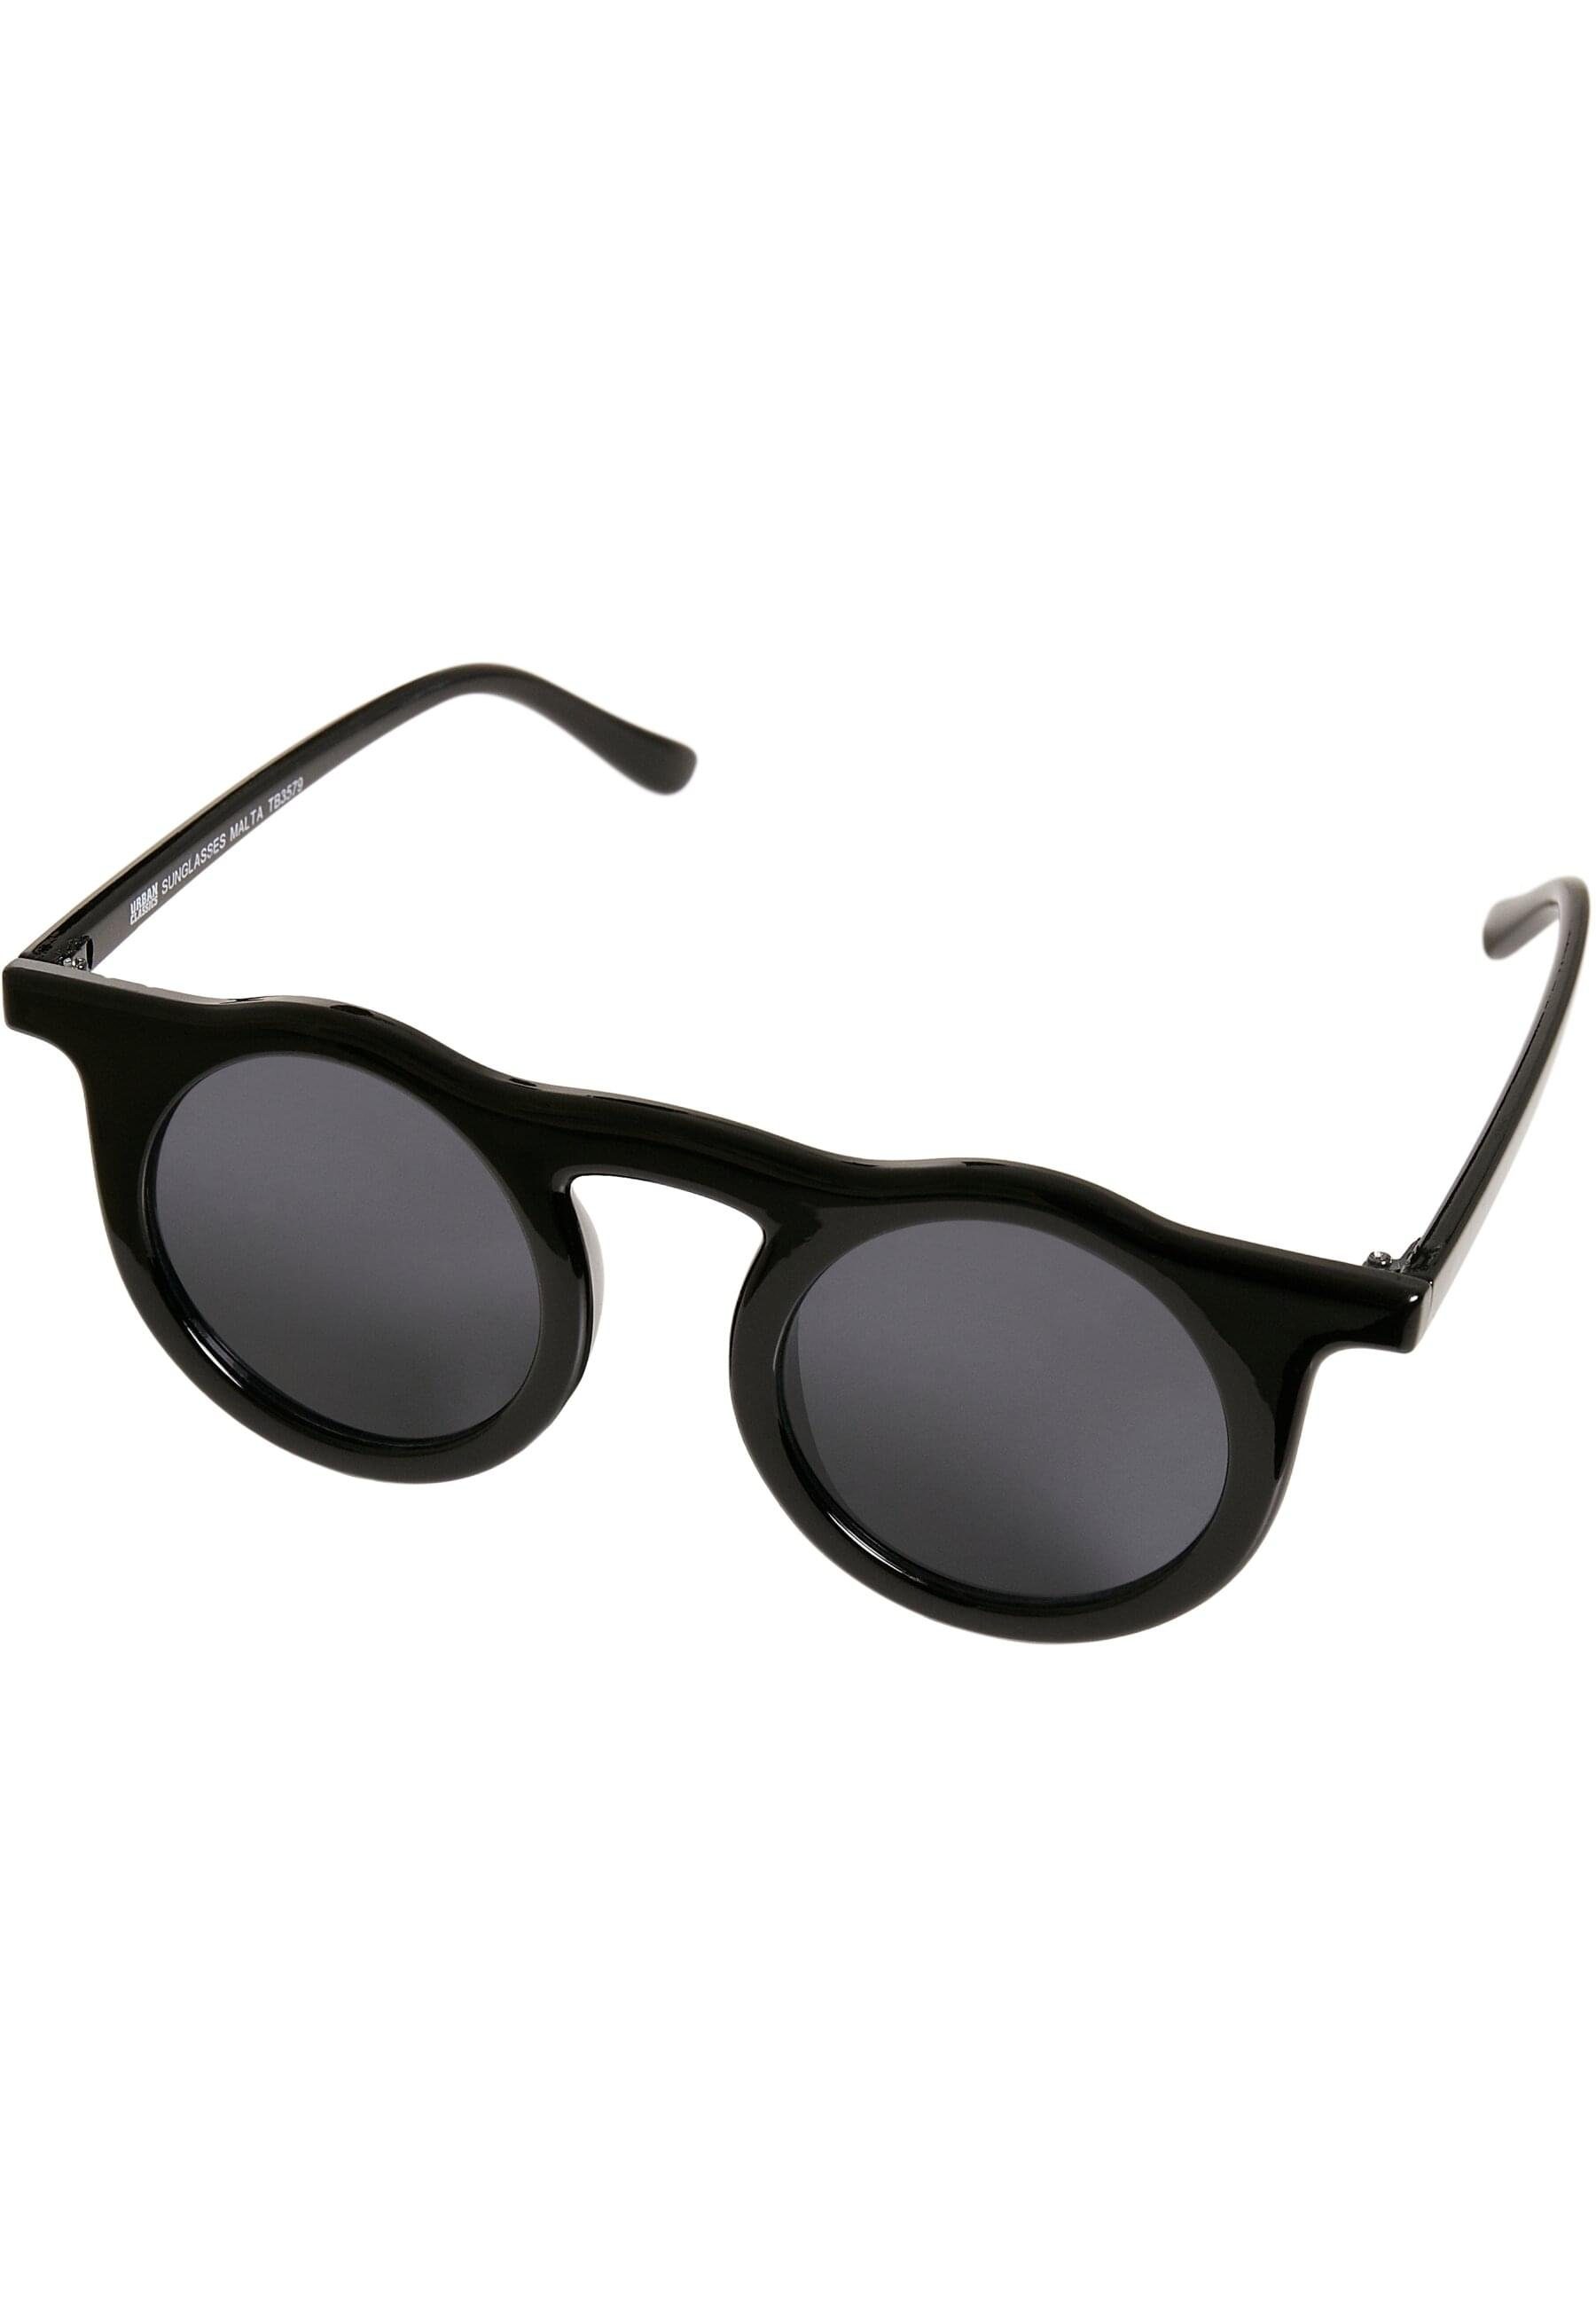 Sunglasses URBAN Unisex Sonnenbrille Malta CLASSICS